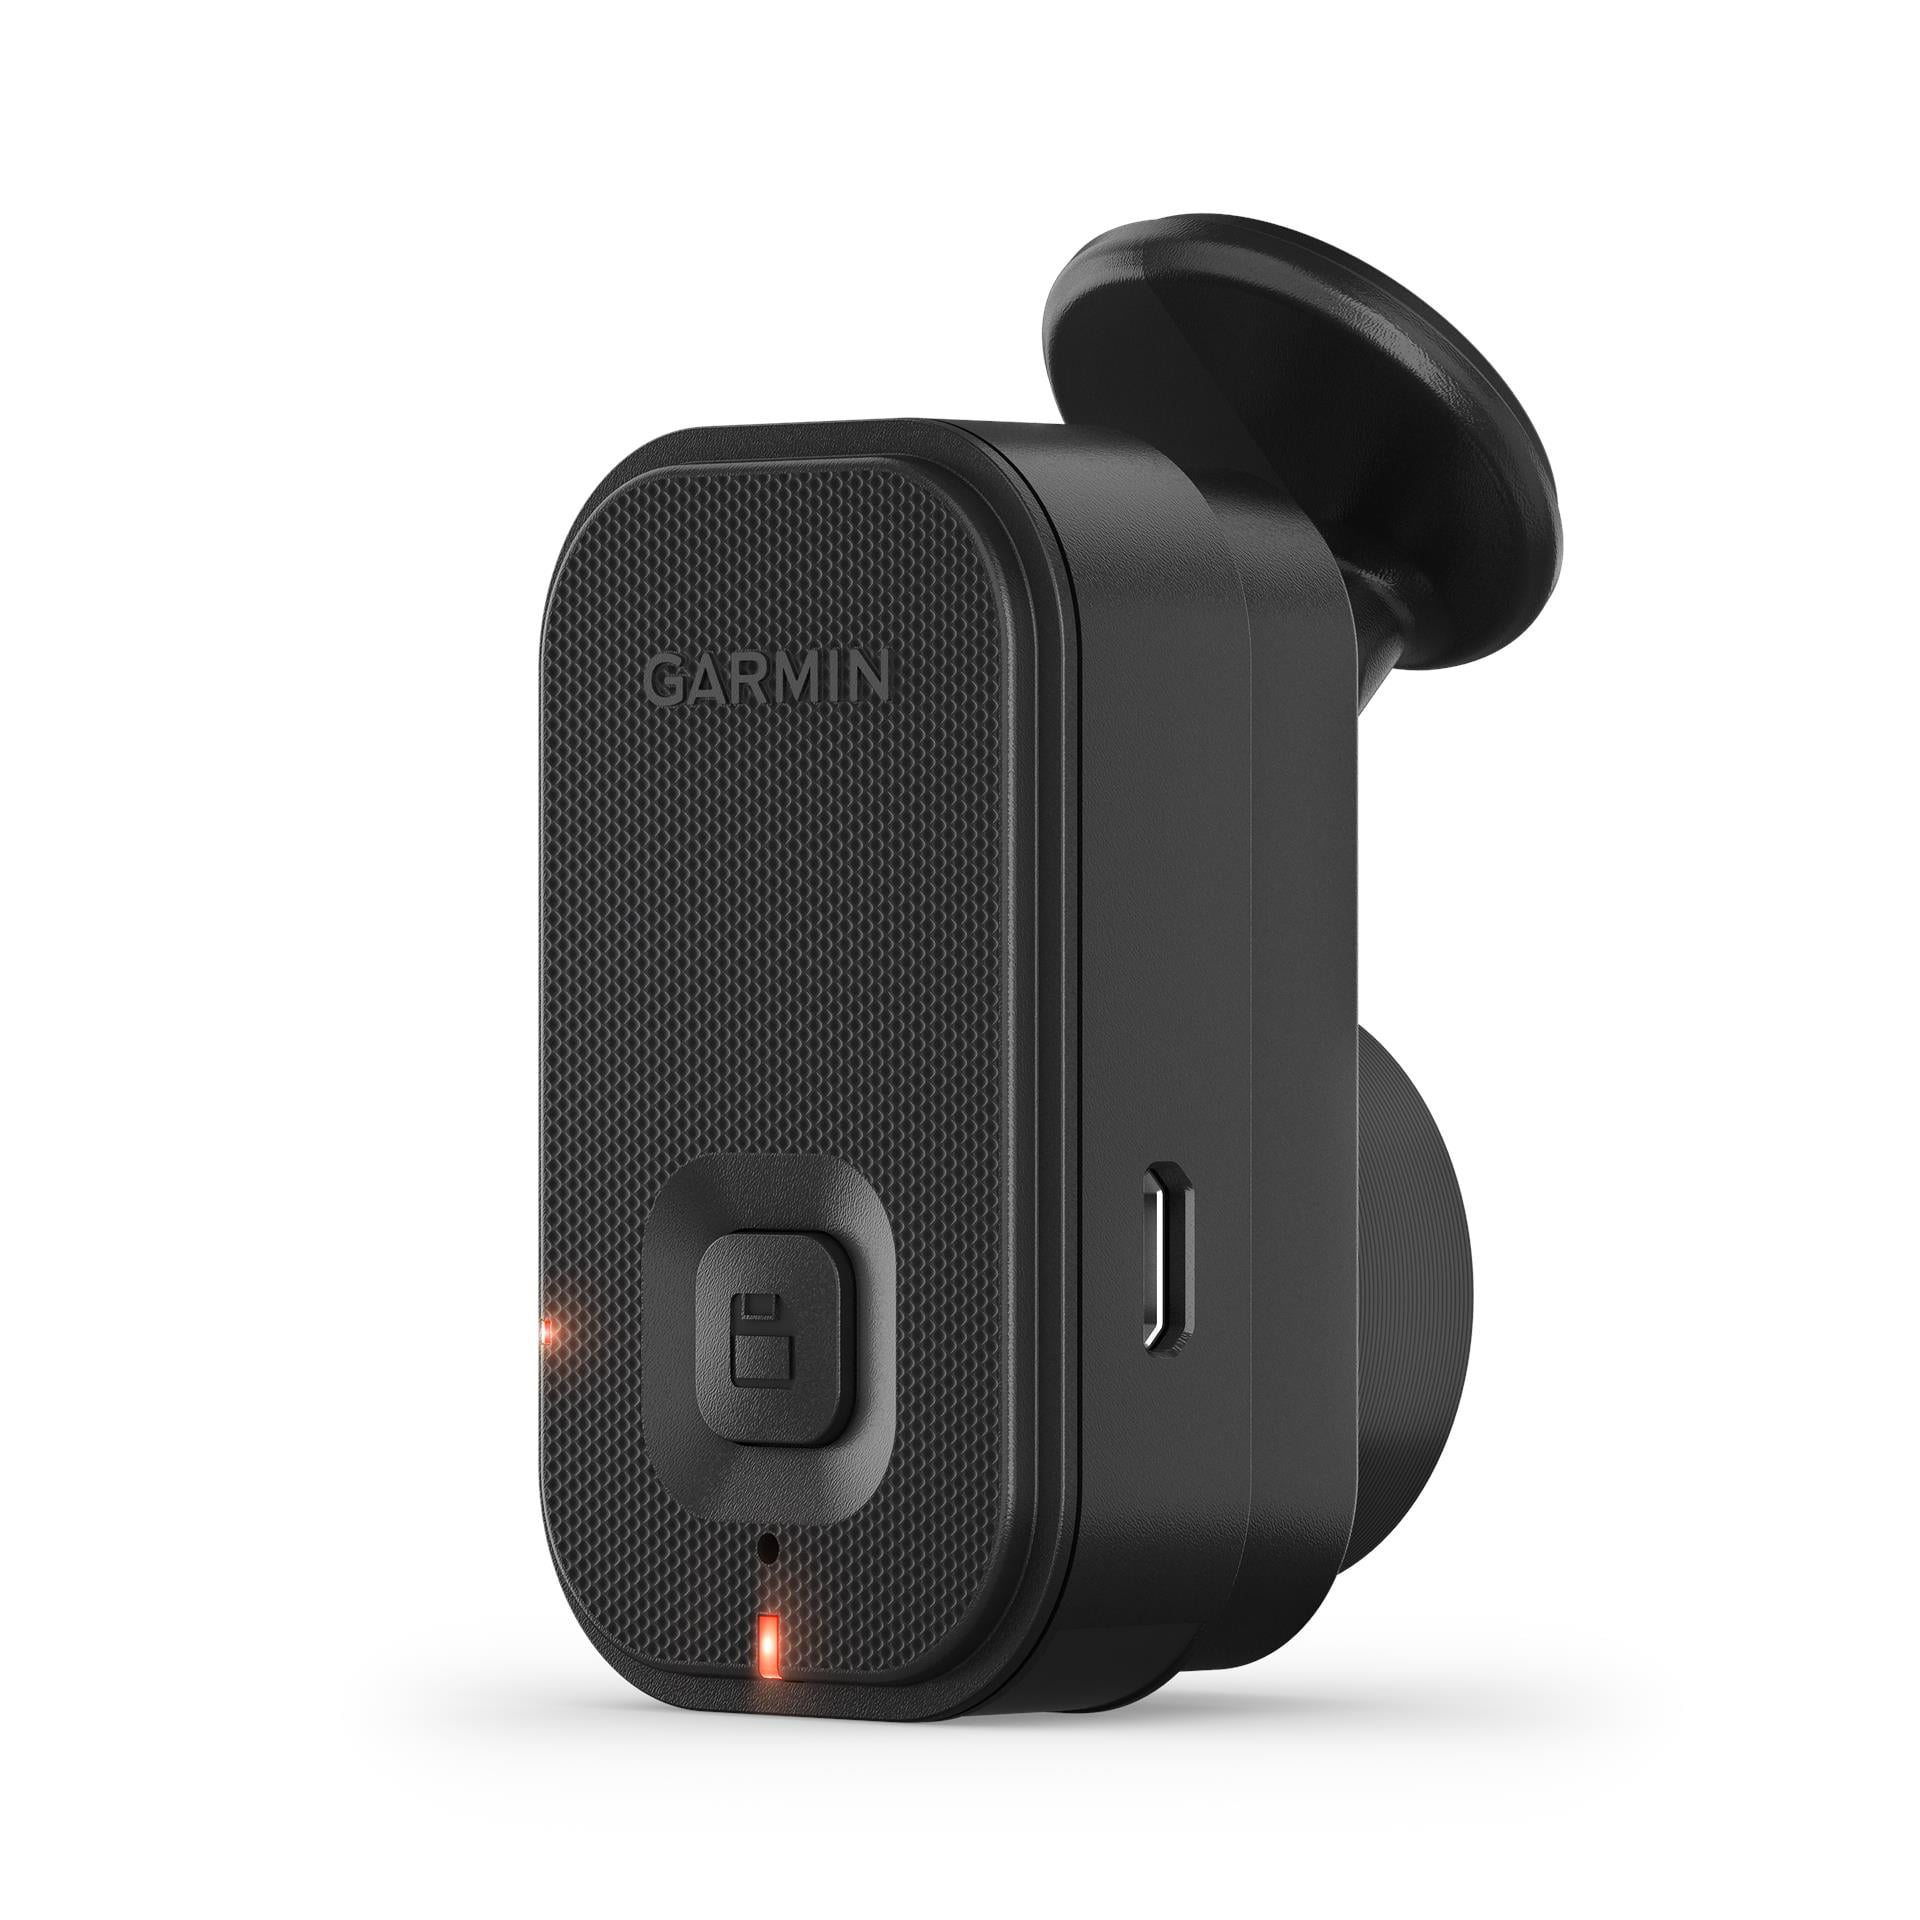 Mindst Knurre Derfra Garmin Dash Cam Mini 2 with Incident Detection Sensor- Black - Walmart.com